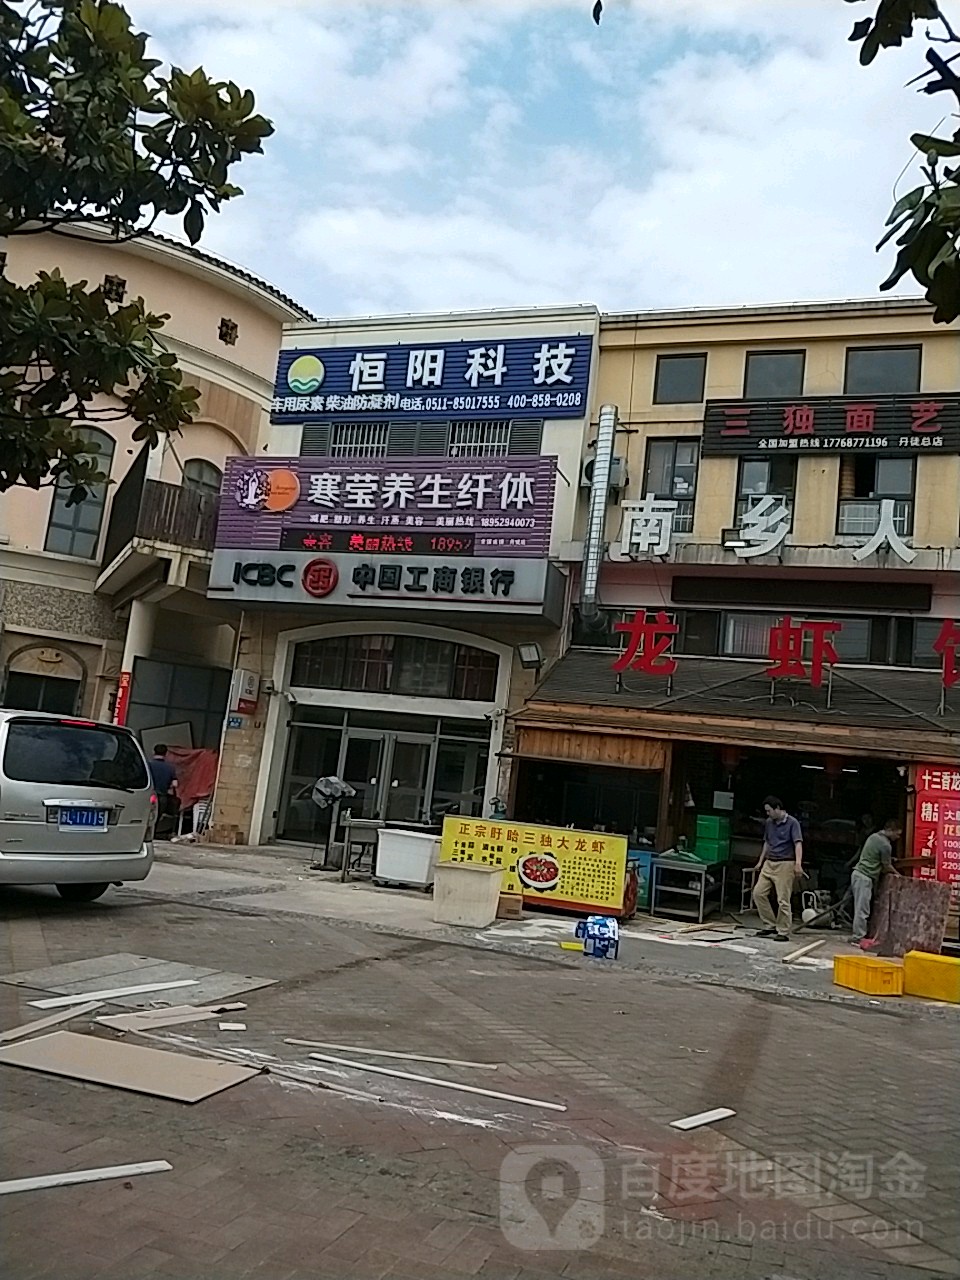 中國工商銀行24小時自助銀行(華山路店)